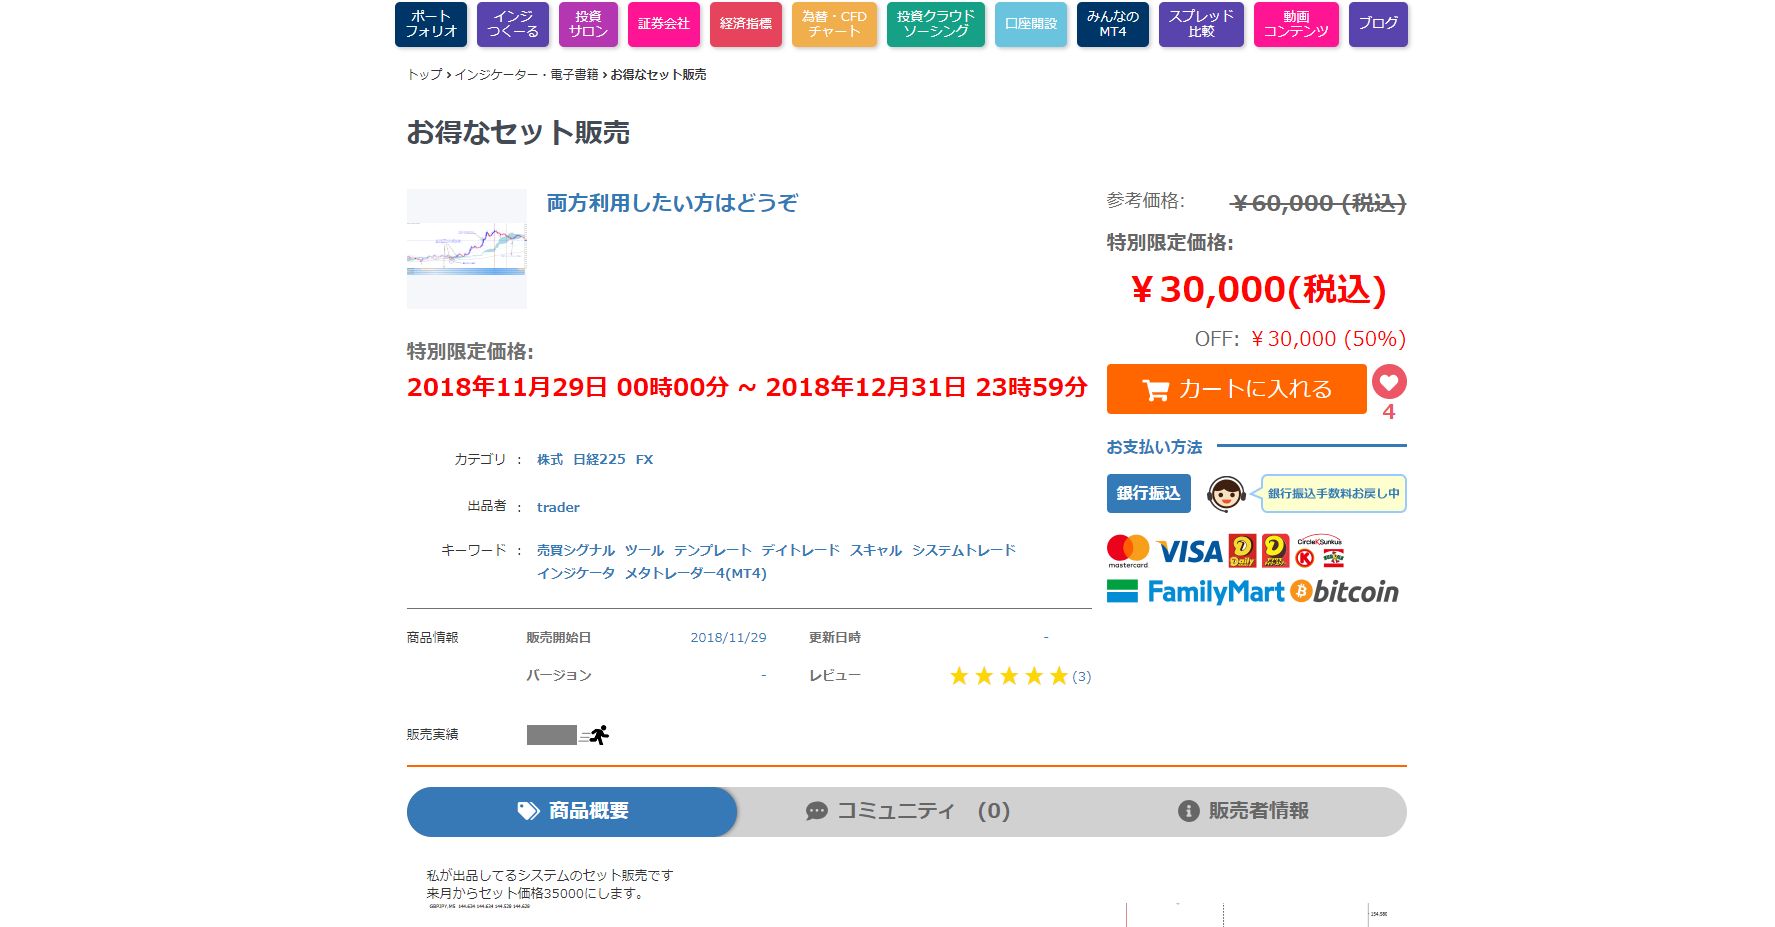 (アフィリエイト勧誘なし)私が出品してるツールを15000円で購入したい方 インジケーター・電子書籍